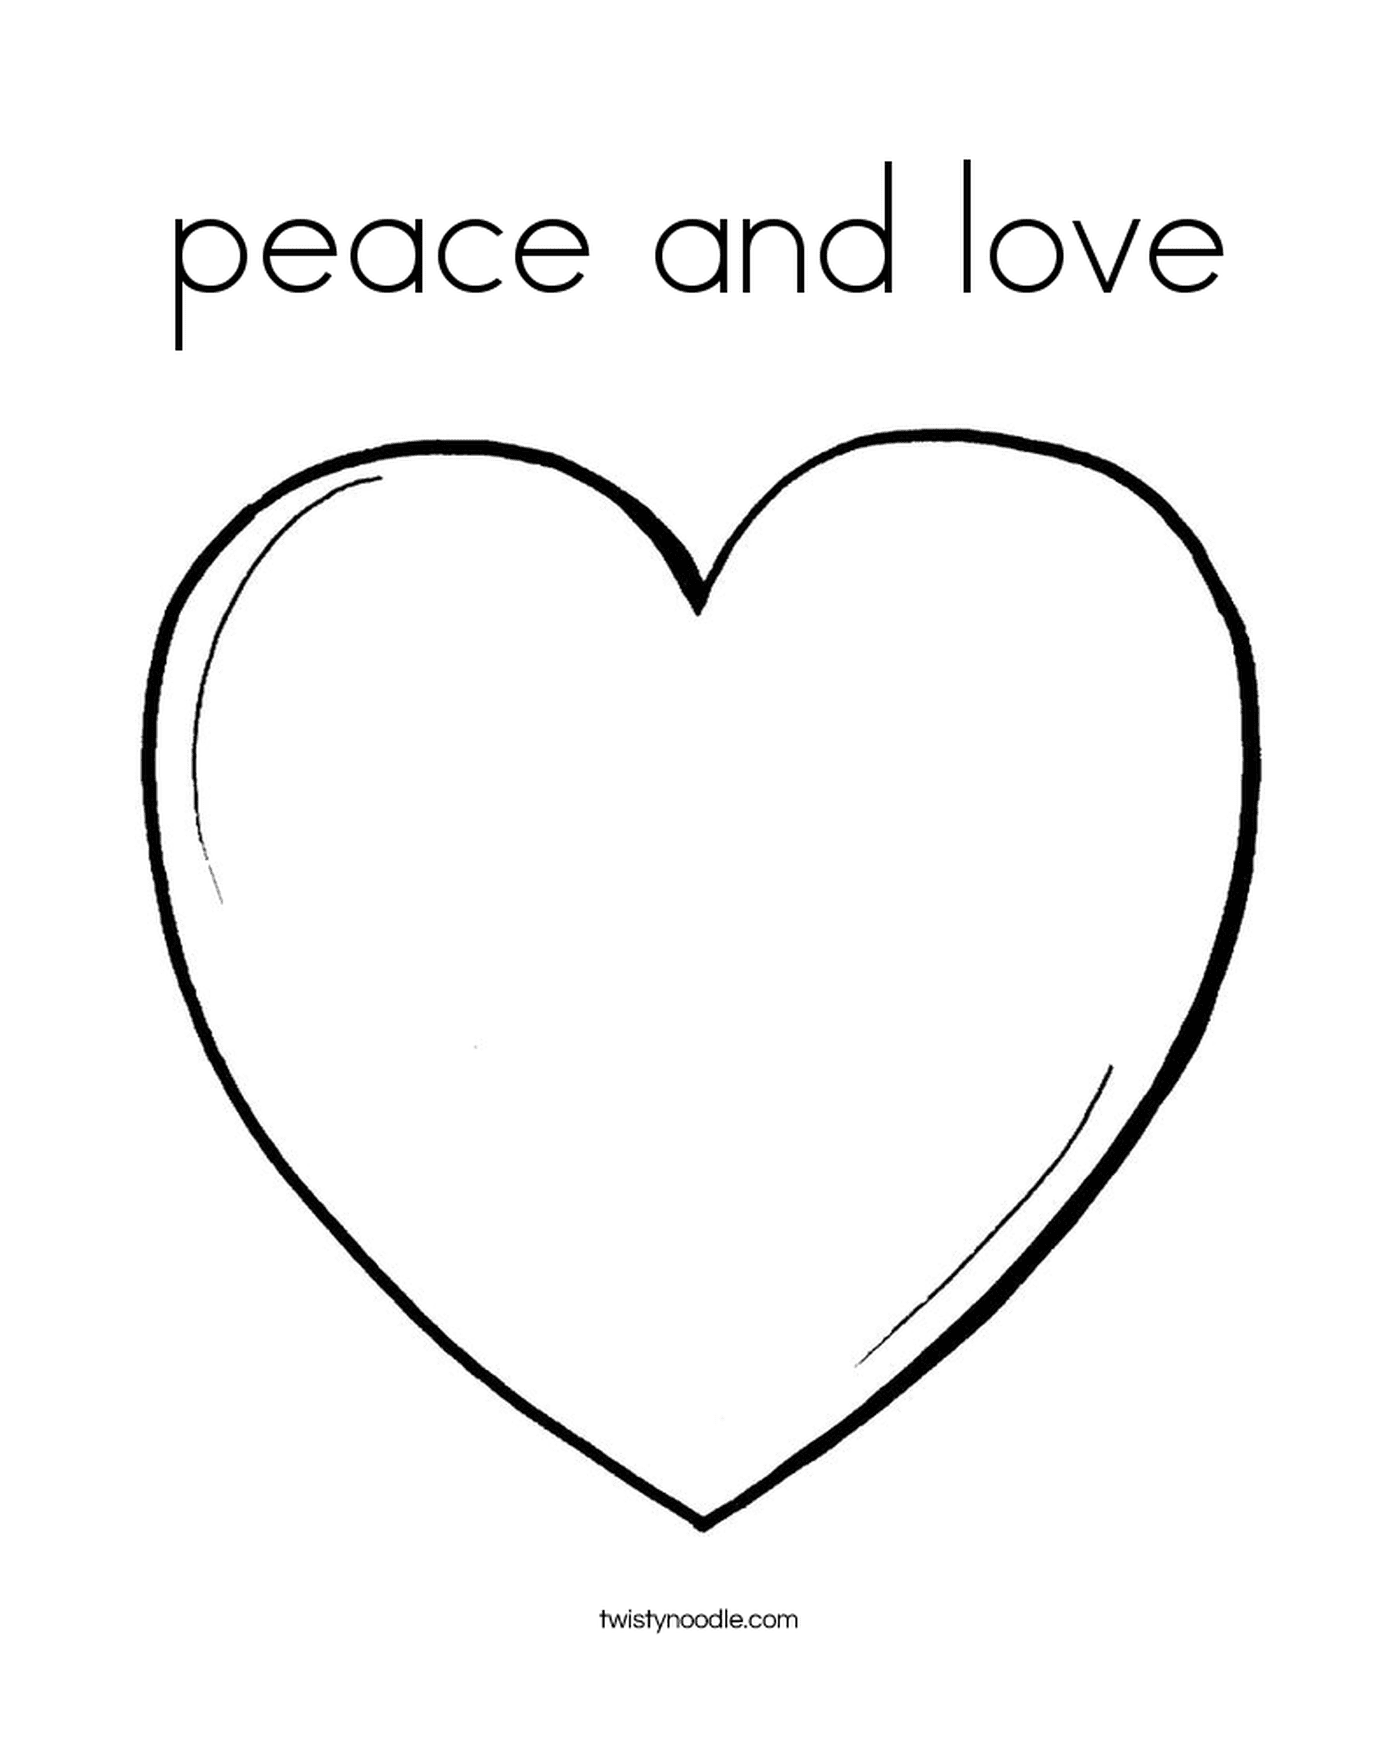  قلب السلام والحب 